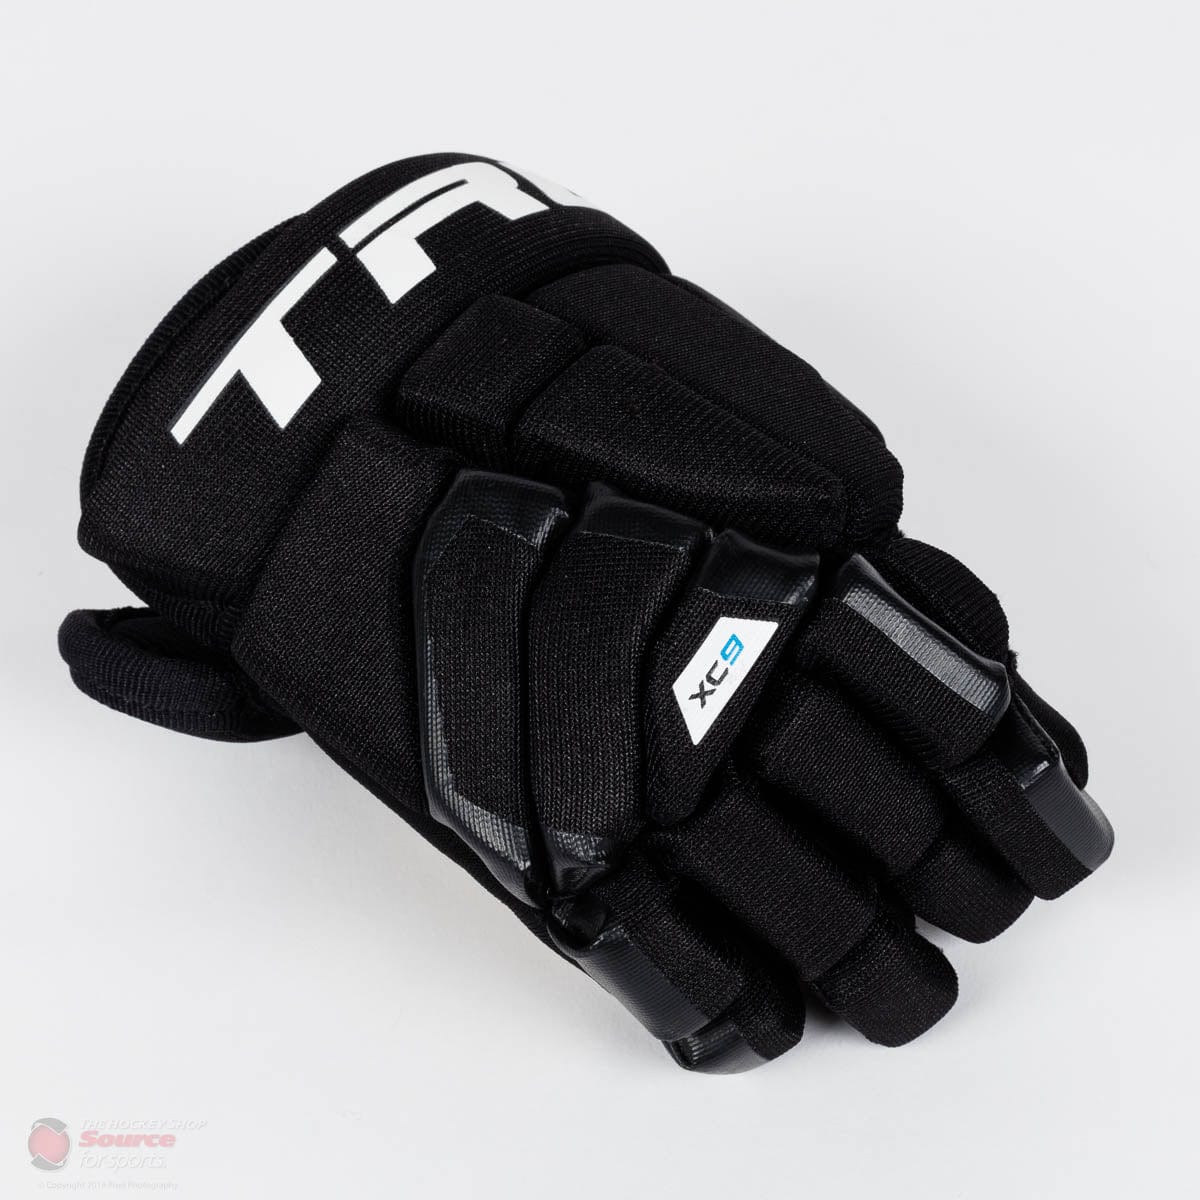 TRUE XC9 Youth Hockey Gloves (2018)